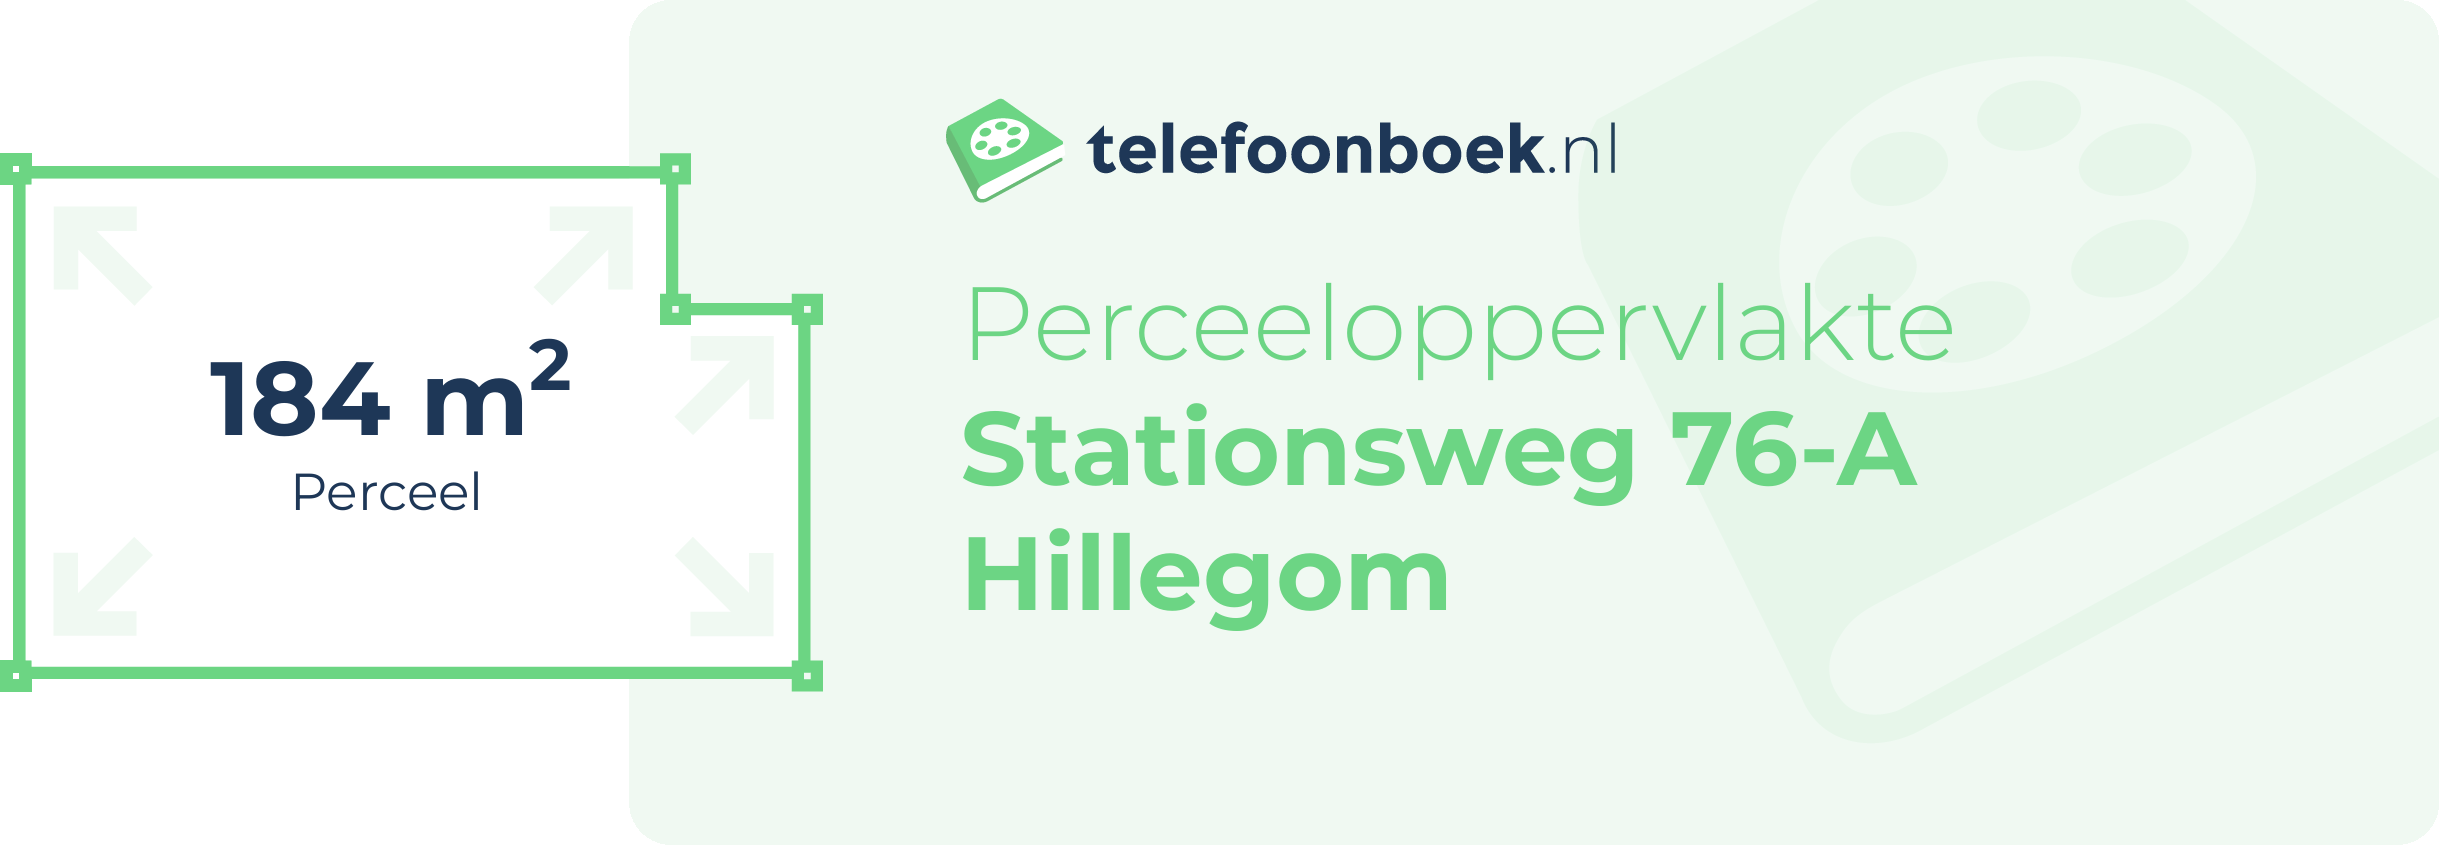 Perceeloppervlakte Stationsweg 76-A Hillegom